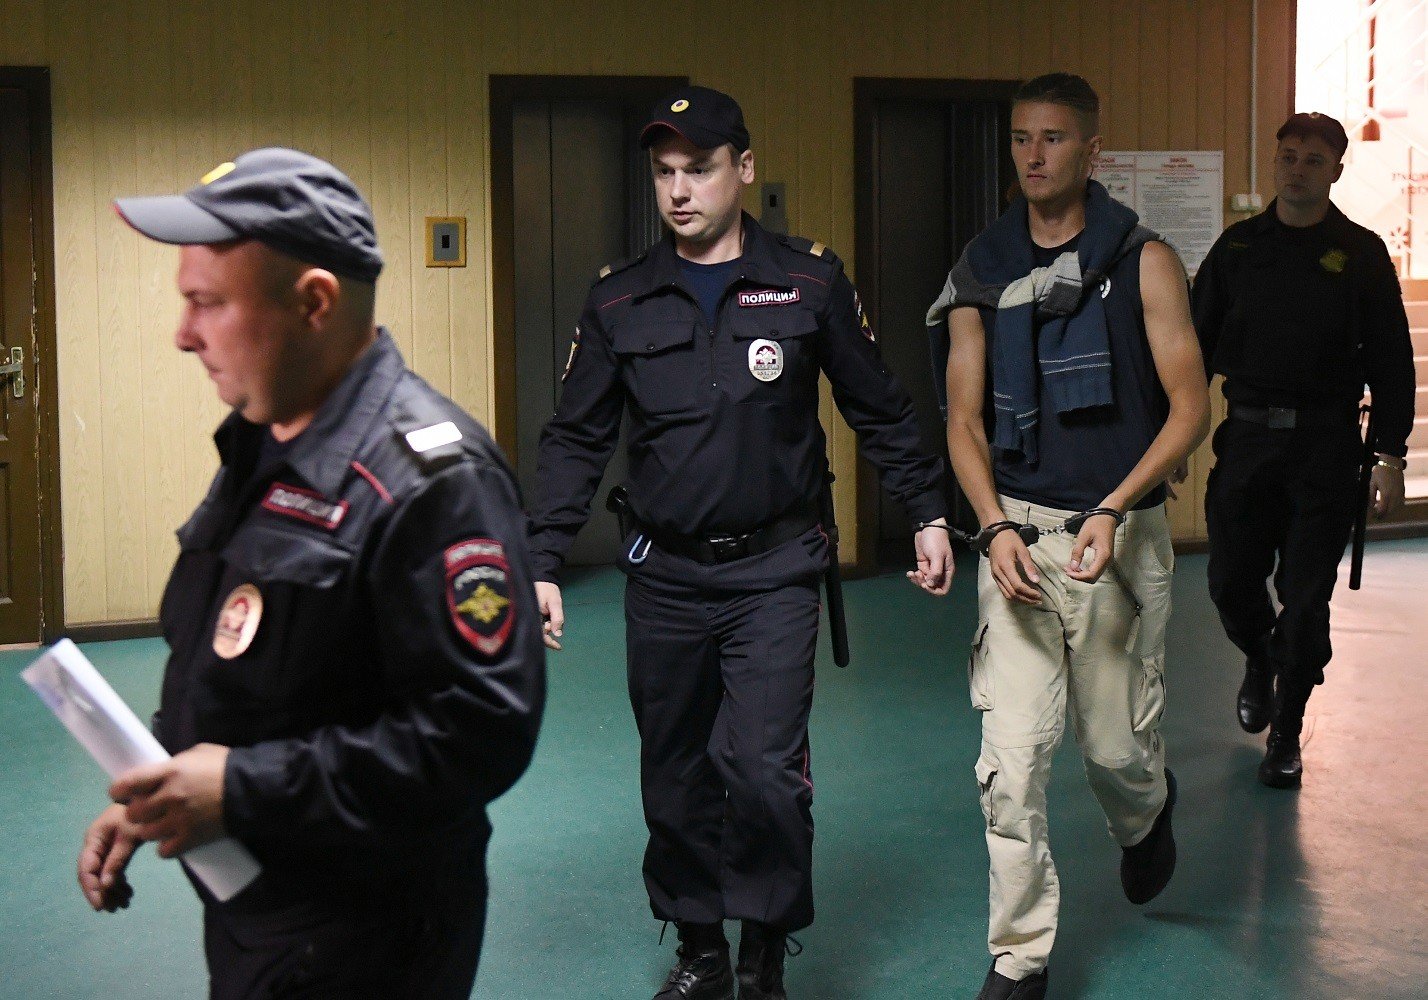 مجلس حقوق الإنسان الروسي: لا أدلة على الإخلال بالنظام في مسيرة 27 يوليو